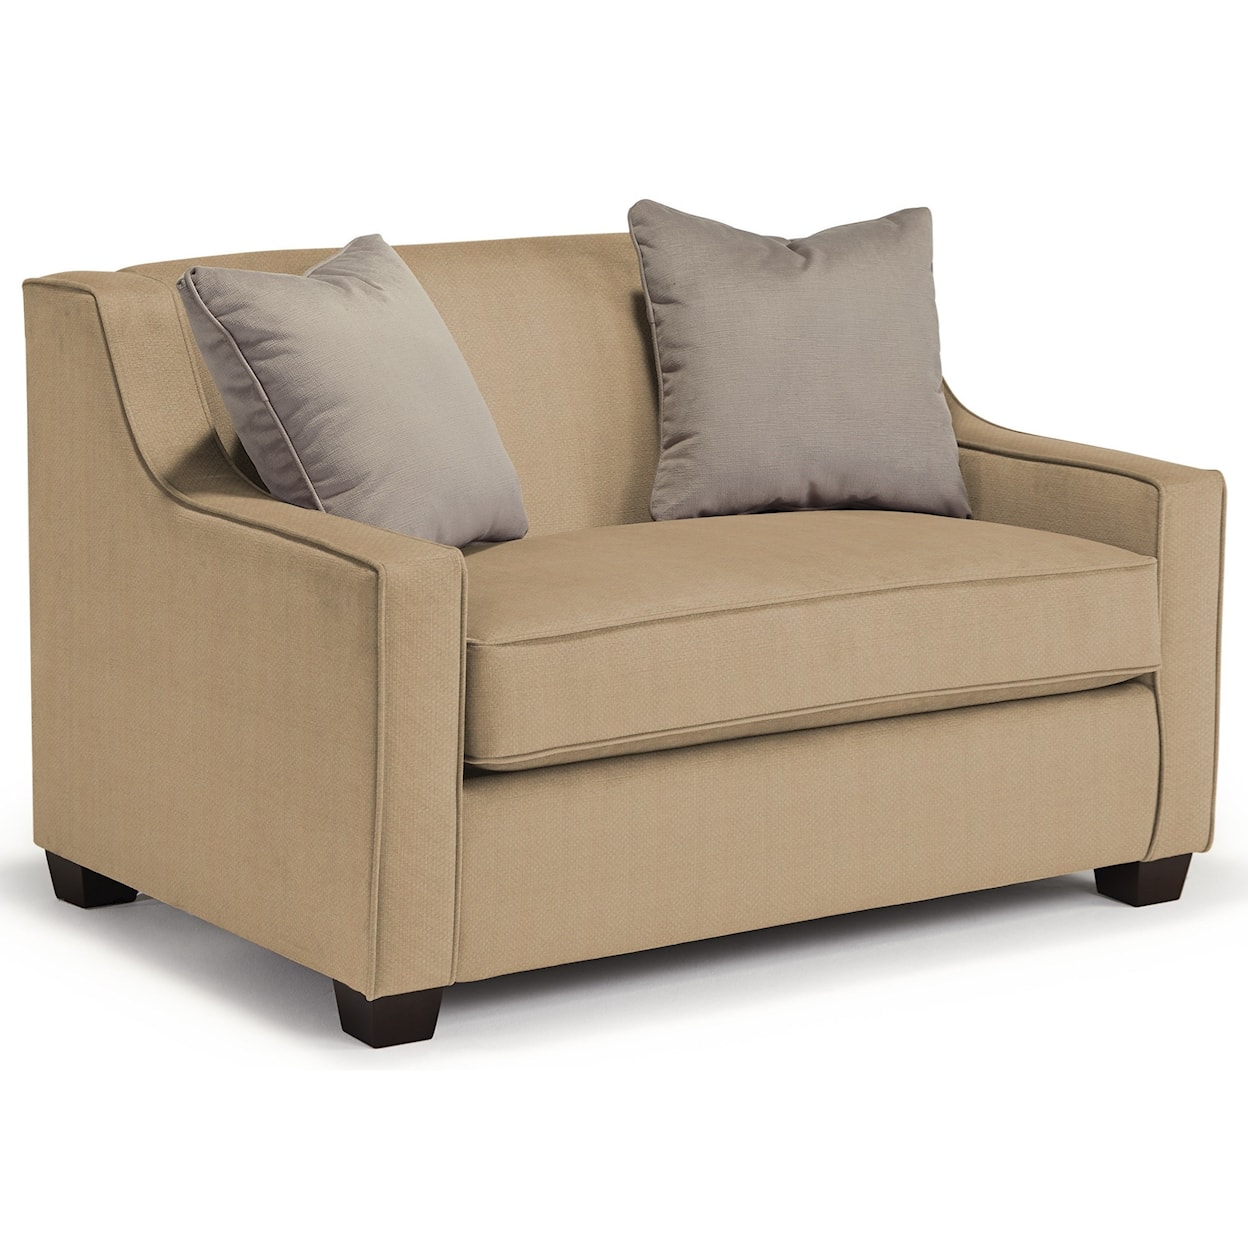 Bravo Furniture Marinette Twin Air Dream Sleeper Chair